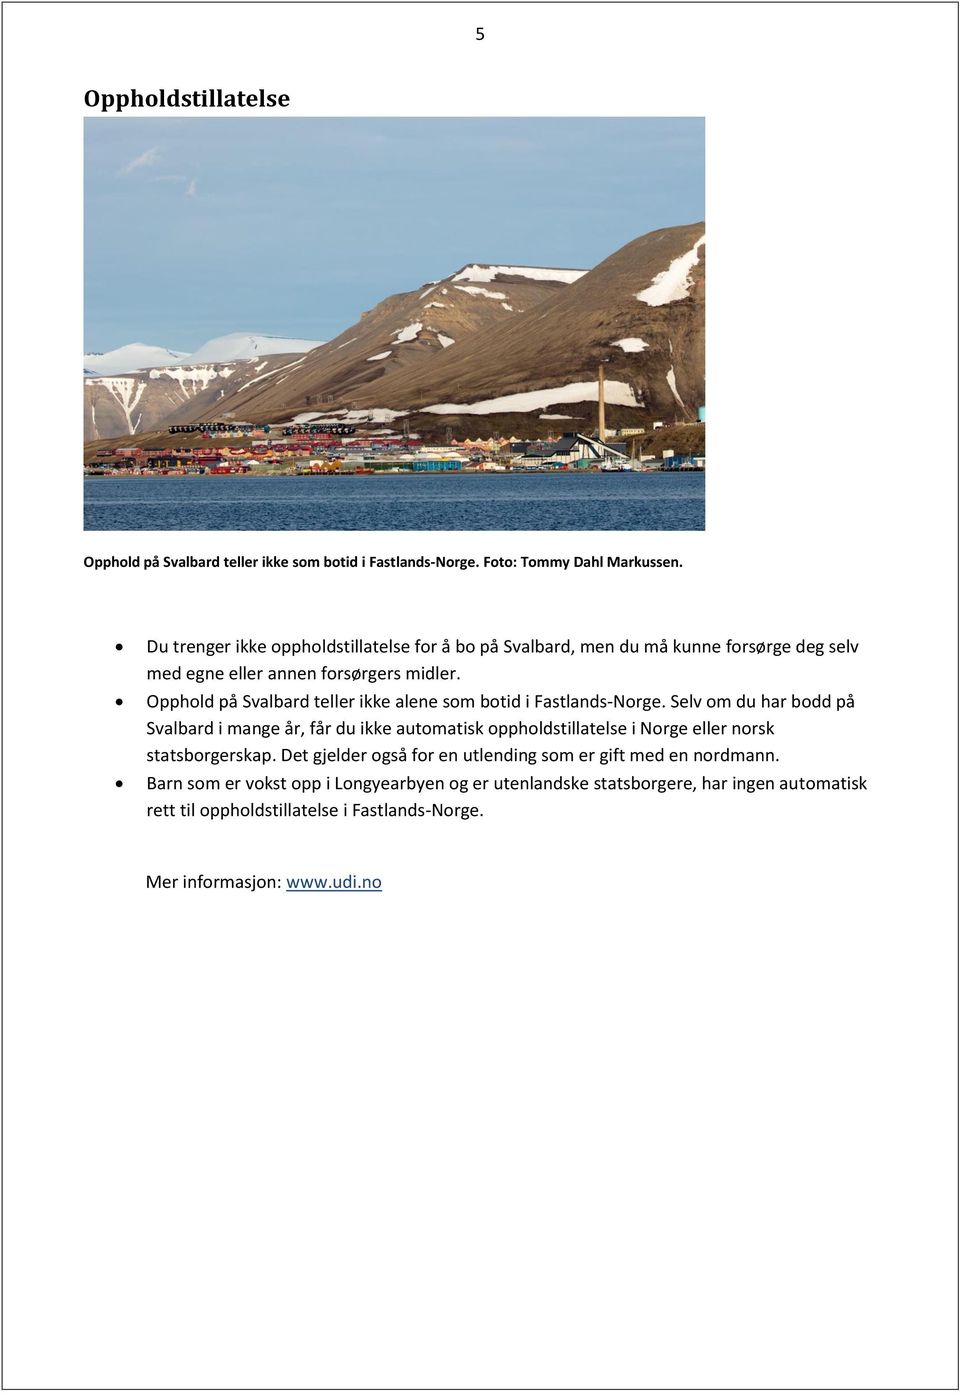 Opphold på Svalbard teller ikke alene som botid i Fastlands-Norge.